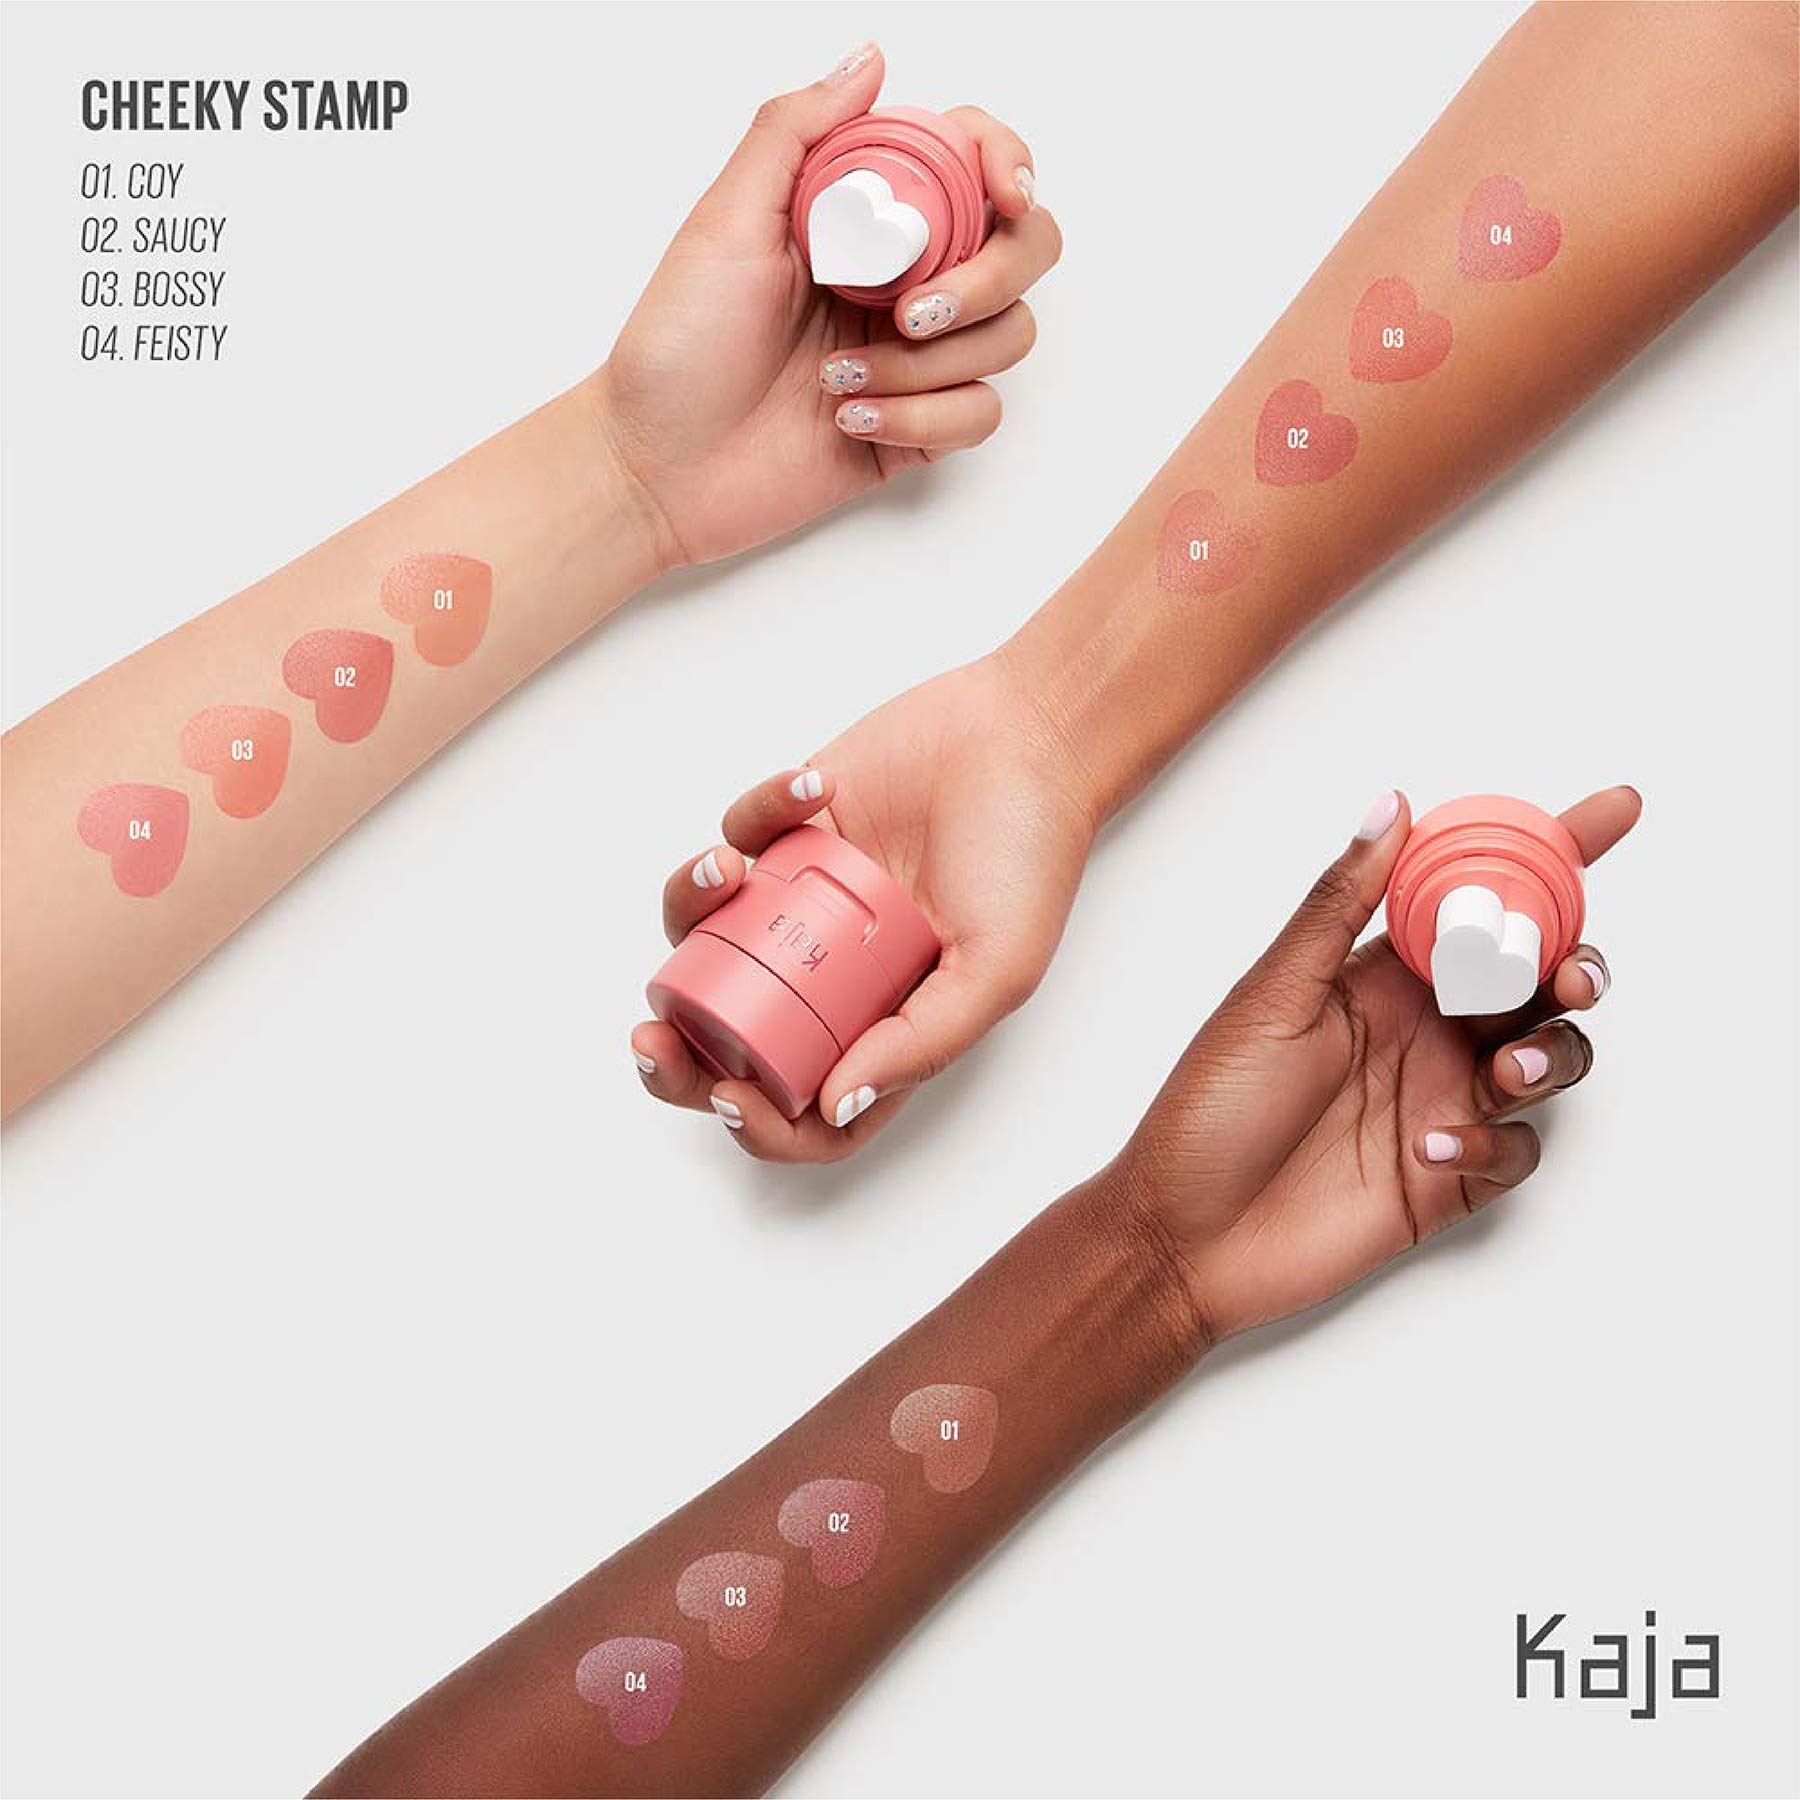 Kaja Blush - Cheeky Stamp, 04 Feisty, 0.17 Oz + Lip & Blush Glazed Keychain Stain - Jelly Charm 02 Squeeze Guava Bundle